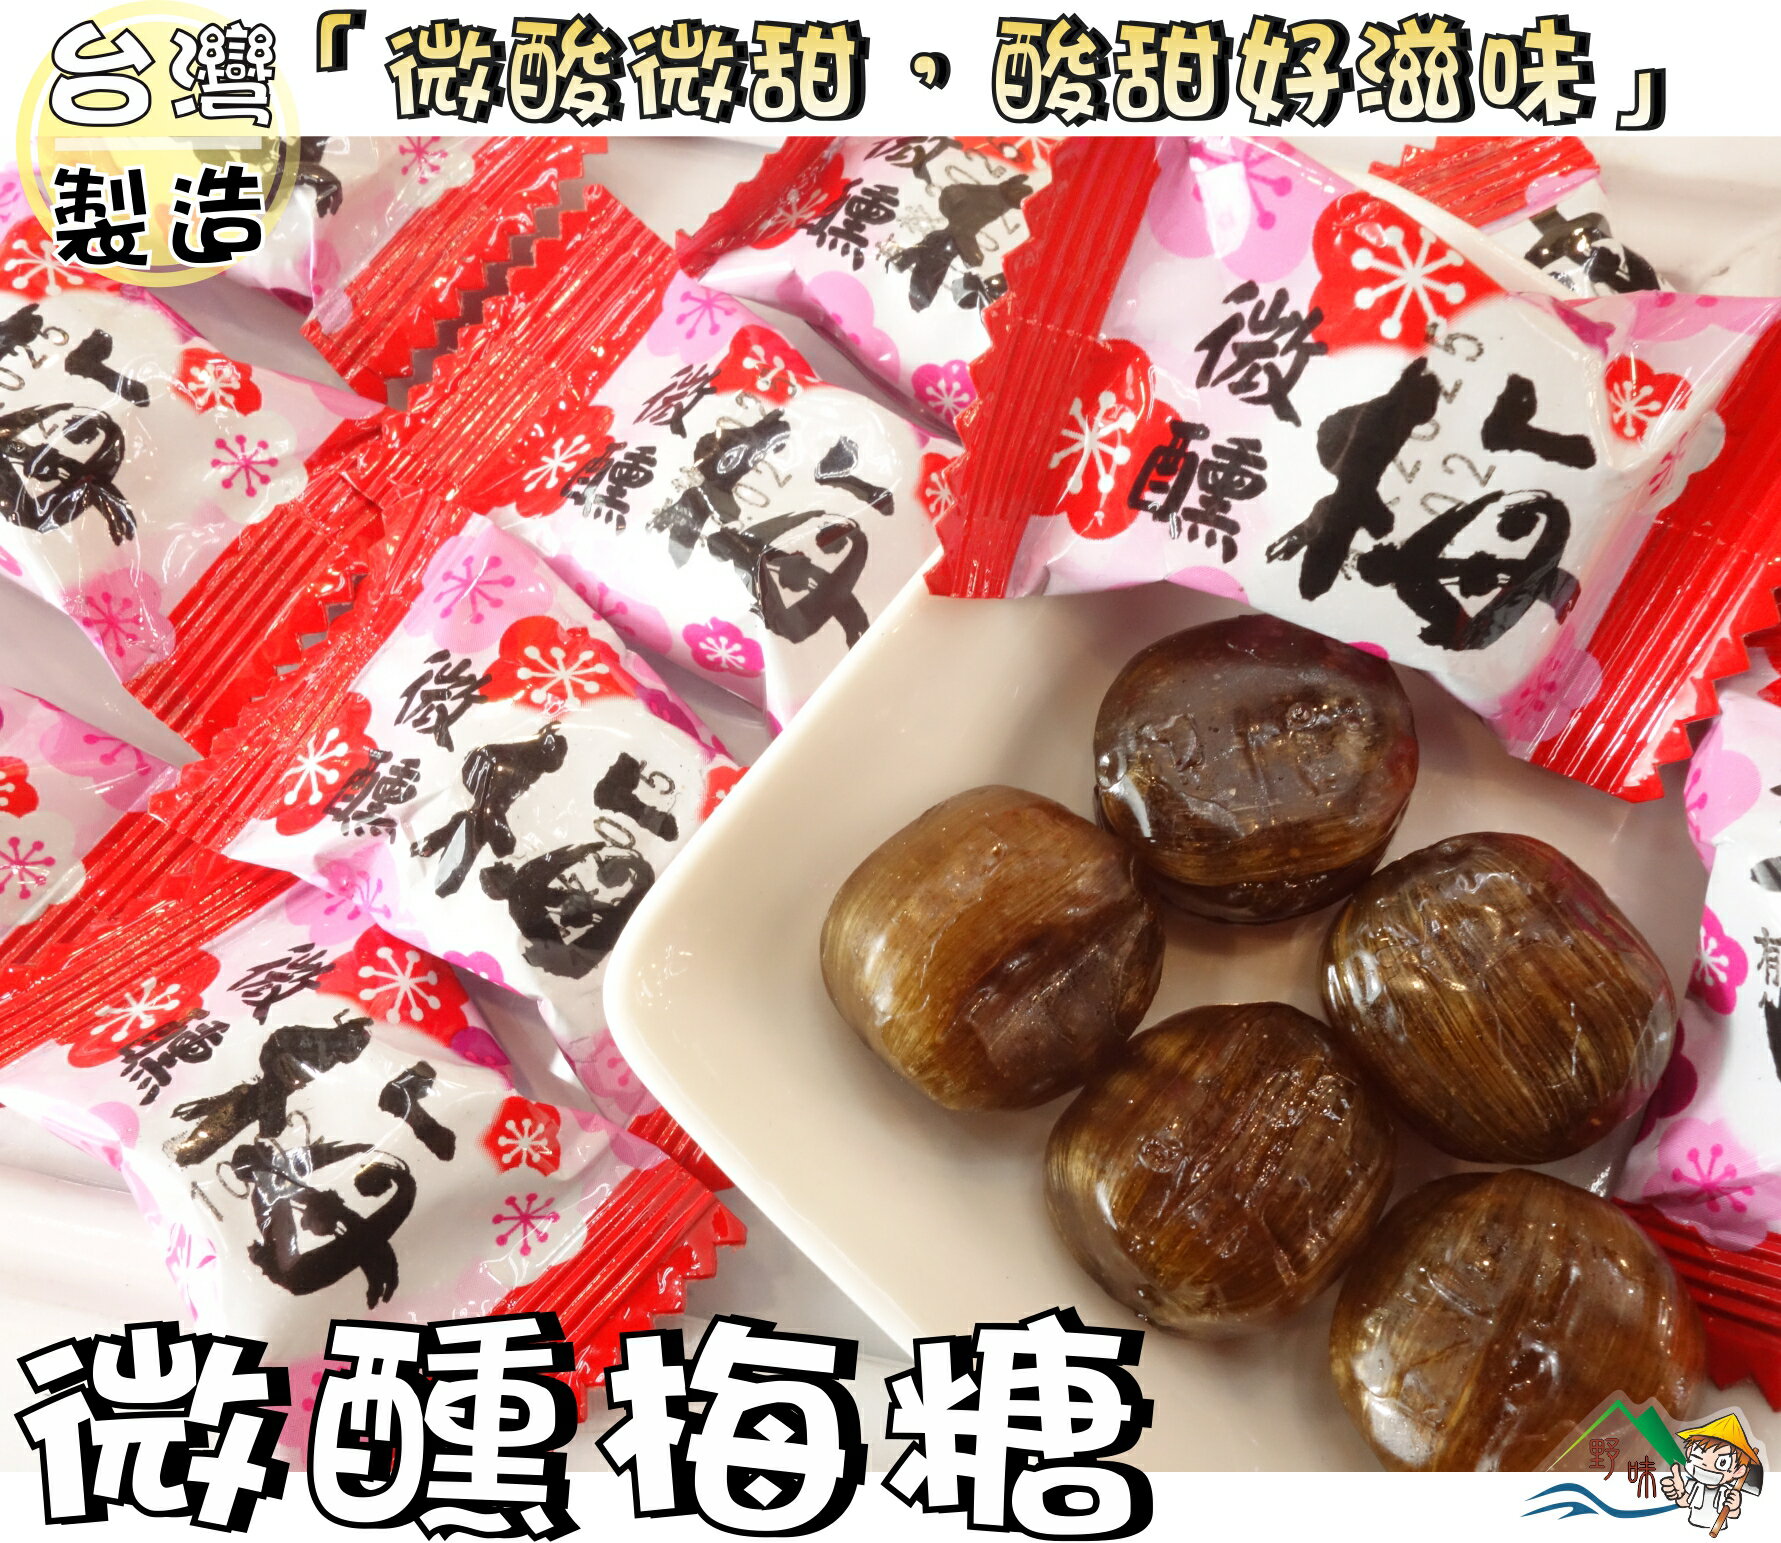 【野味食品】微醺梅硬糖(150g/包,370g/包,桃園實體店面出貨)#梅子糖